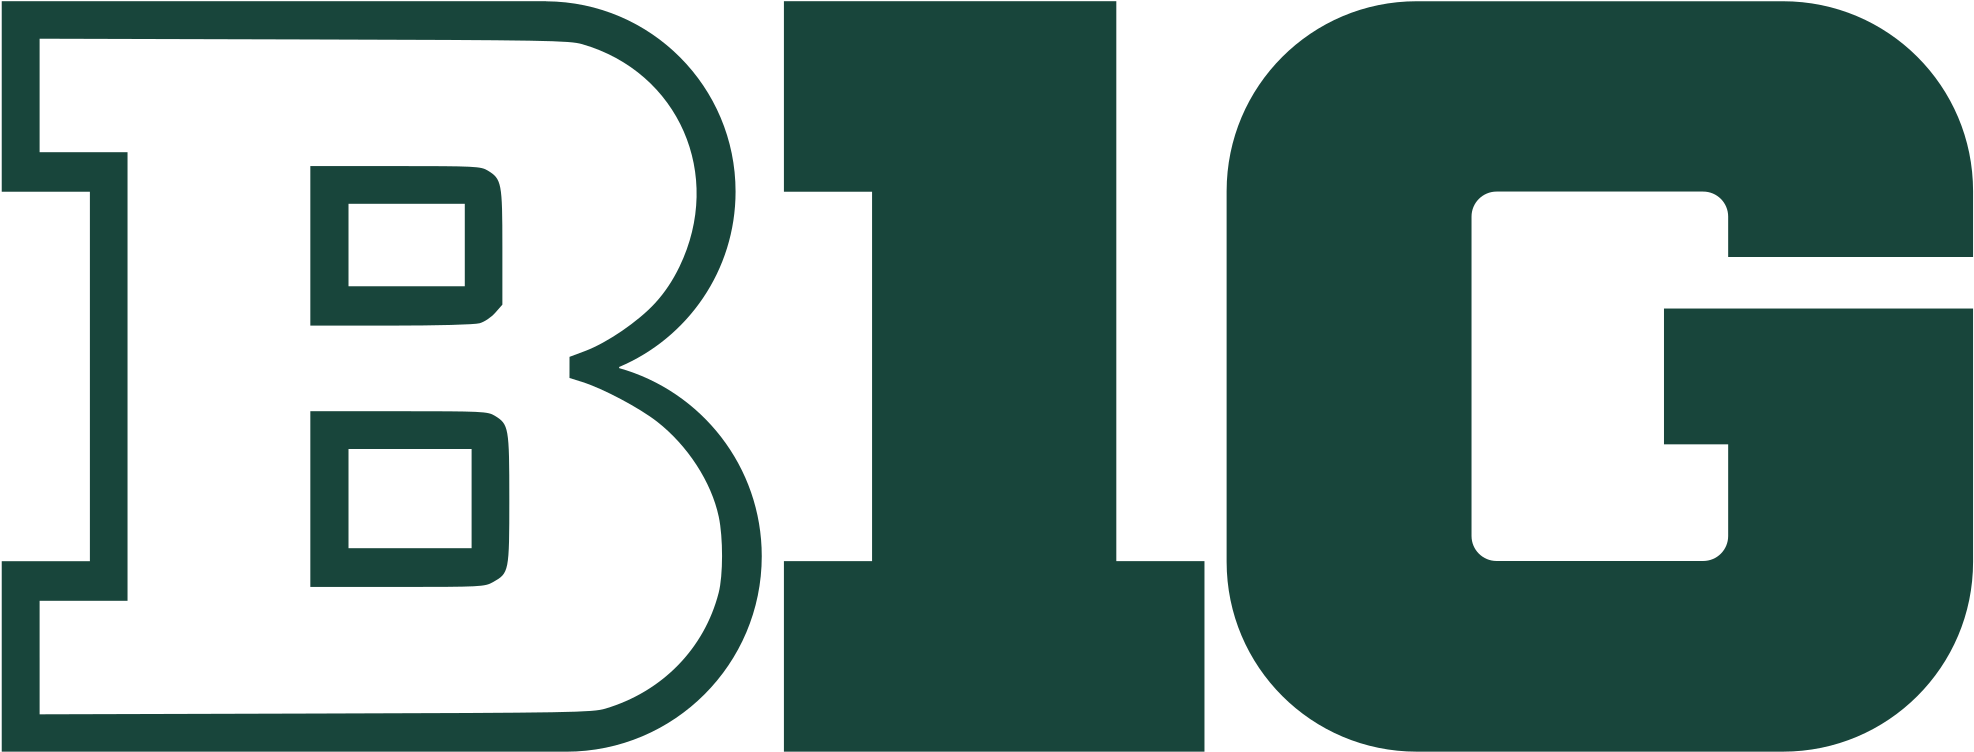 Msu Spartan Cliparts 1, Buy Clip Art - Big Ten Conference Logo (2000x778)